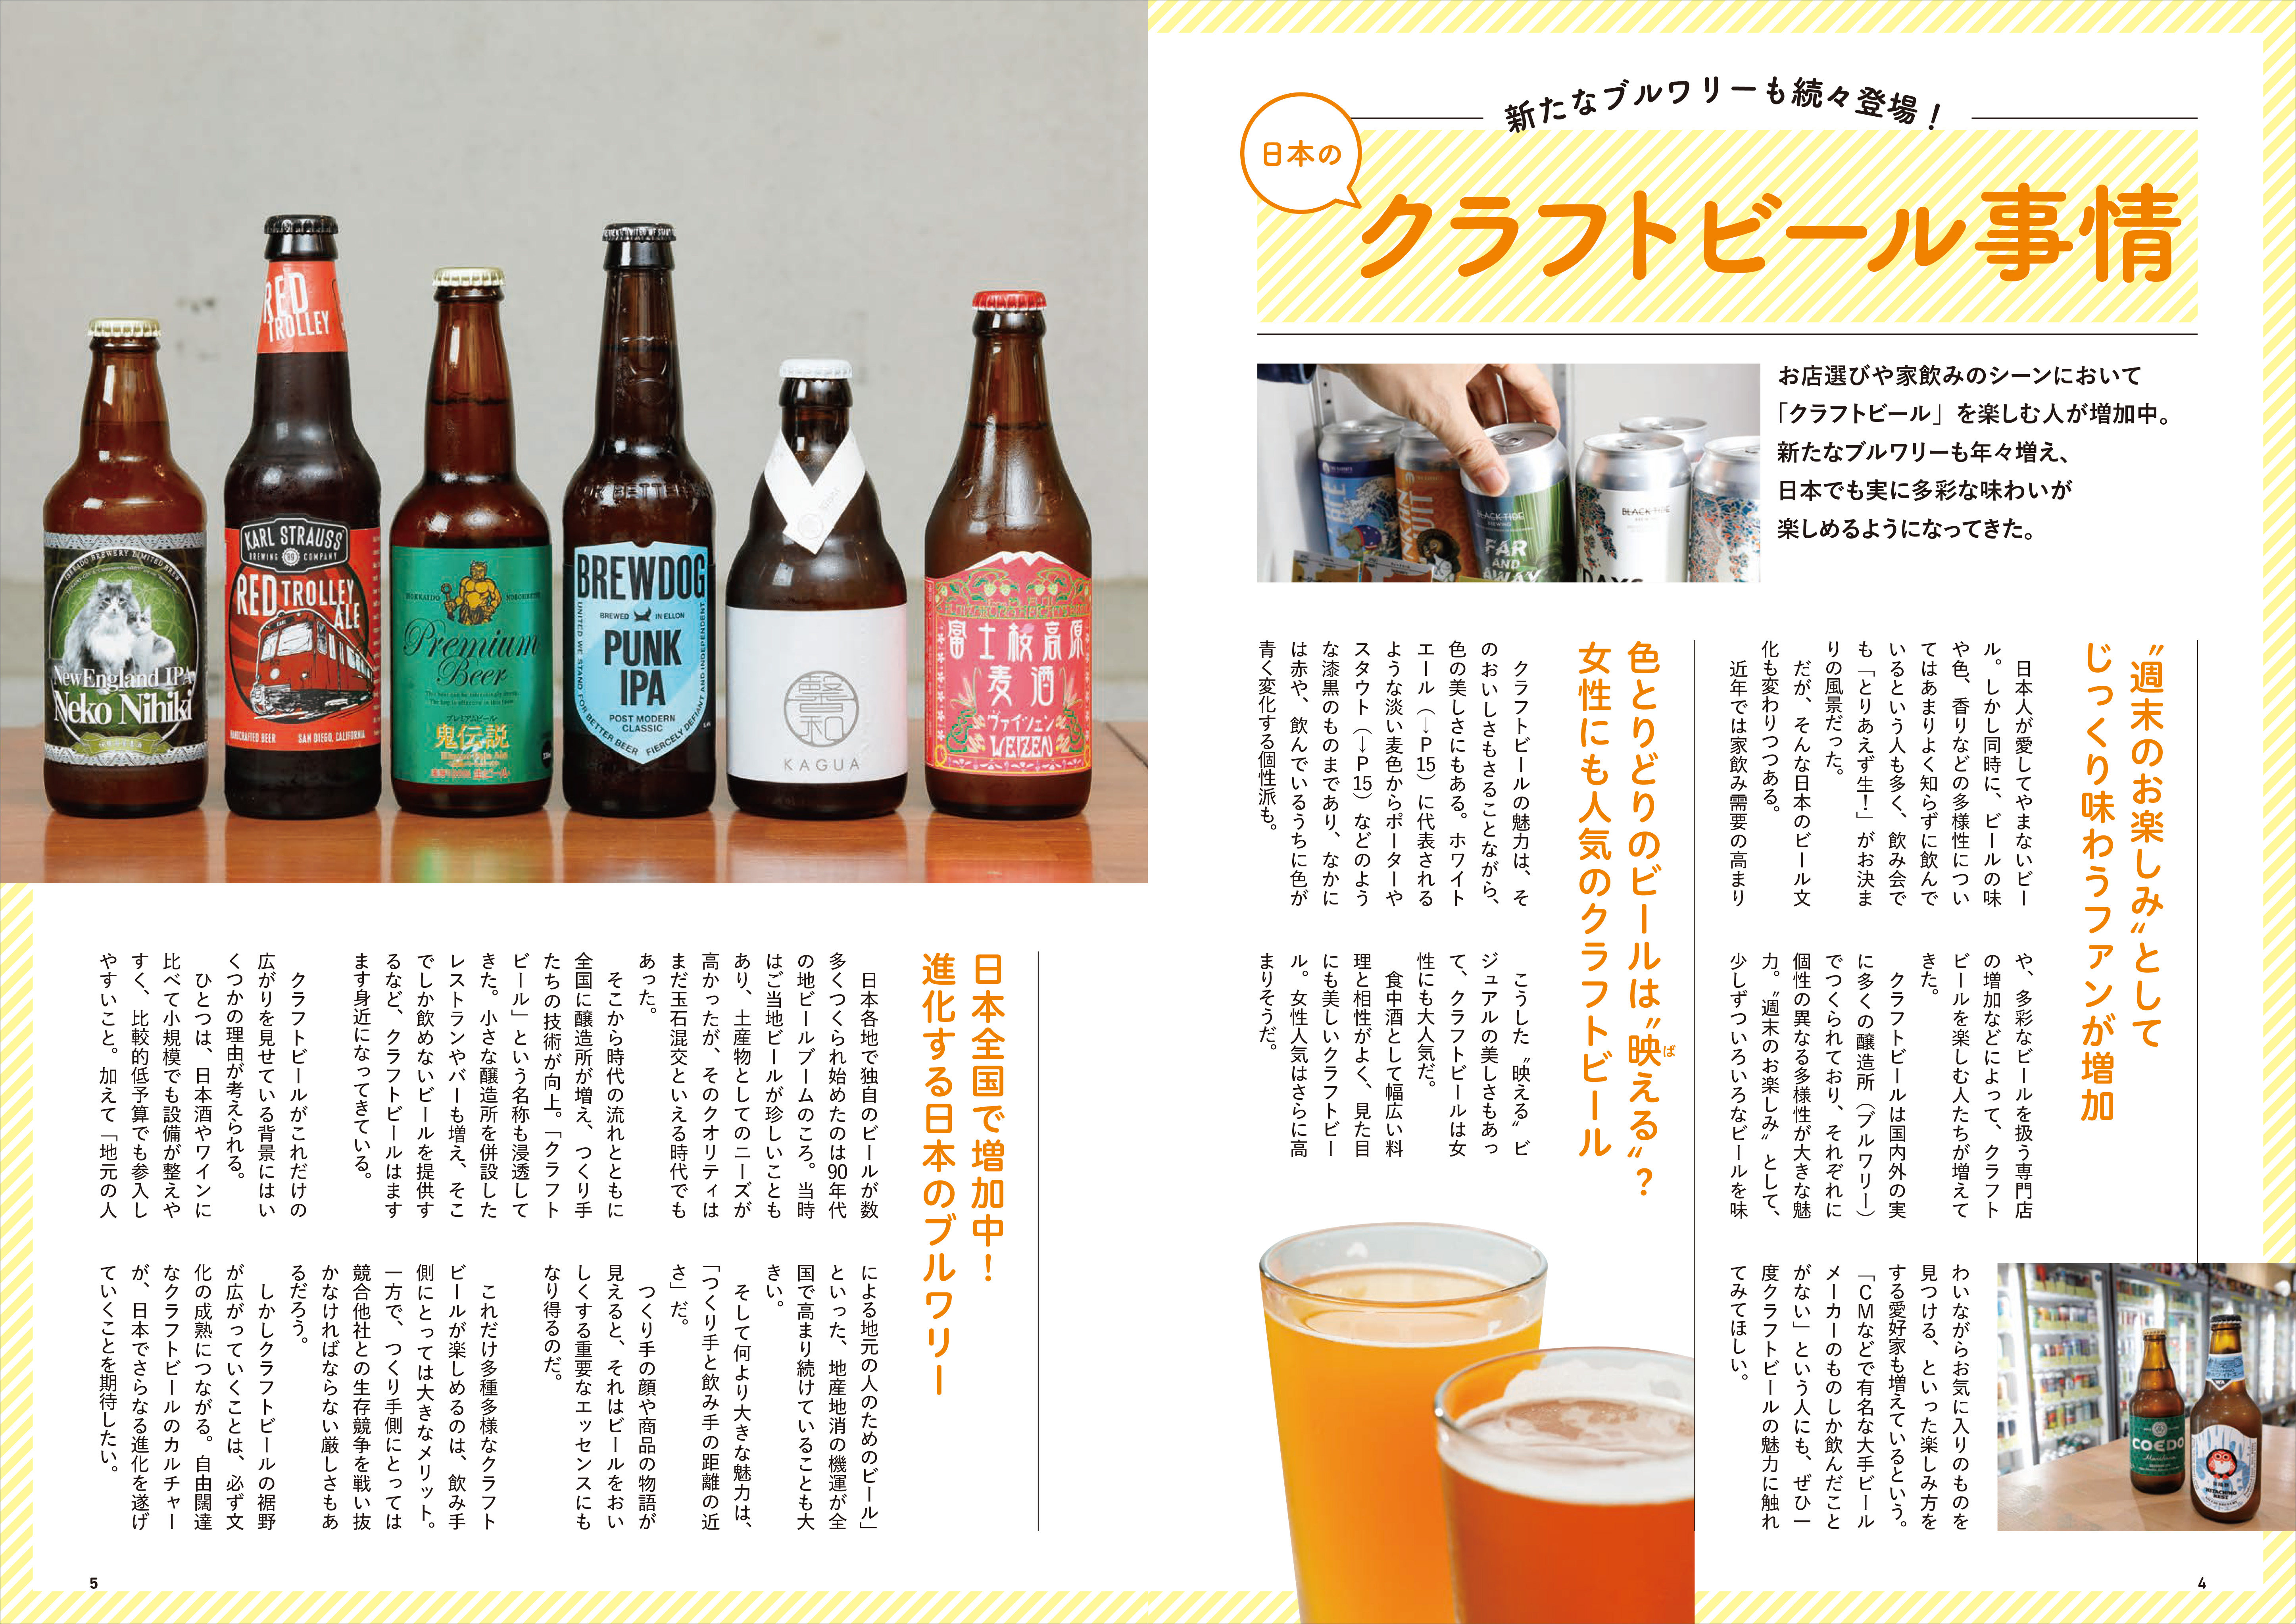 「新たなブルワリーも年々増え、日本でも実に多彩な味わいが楽しめるようになってきたクラフトビールの最新情報をお届け」紙面